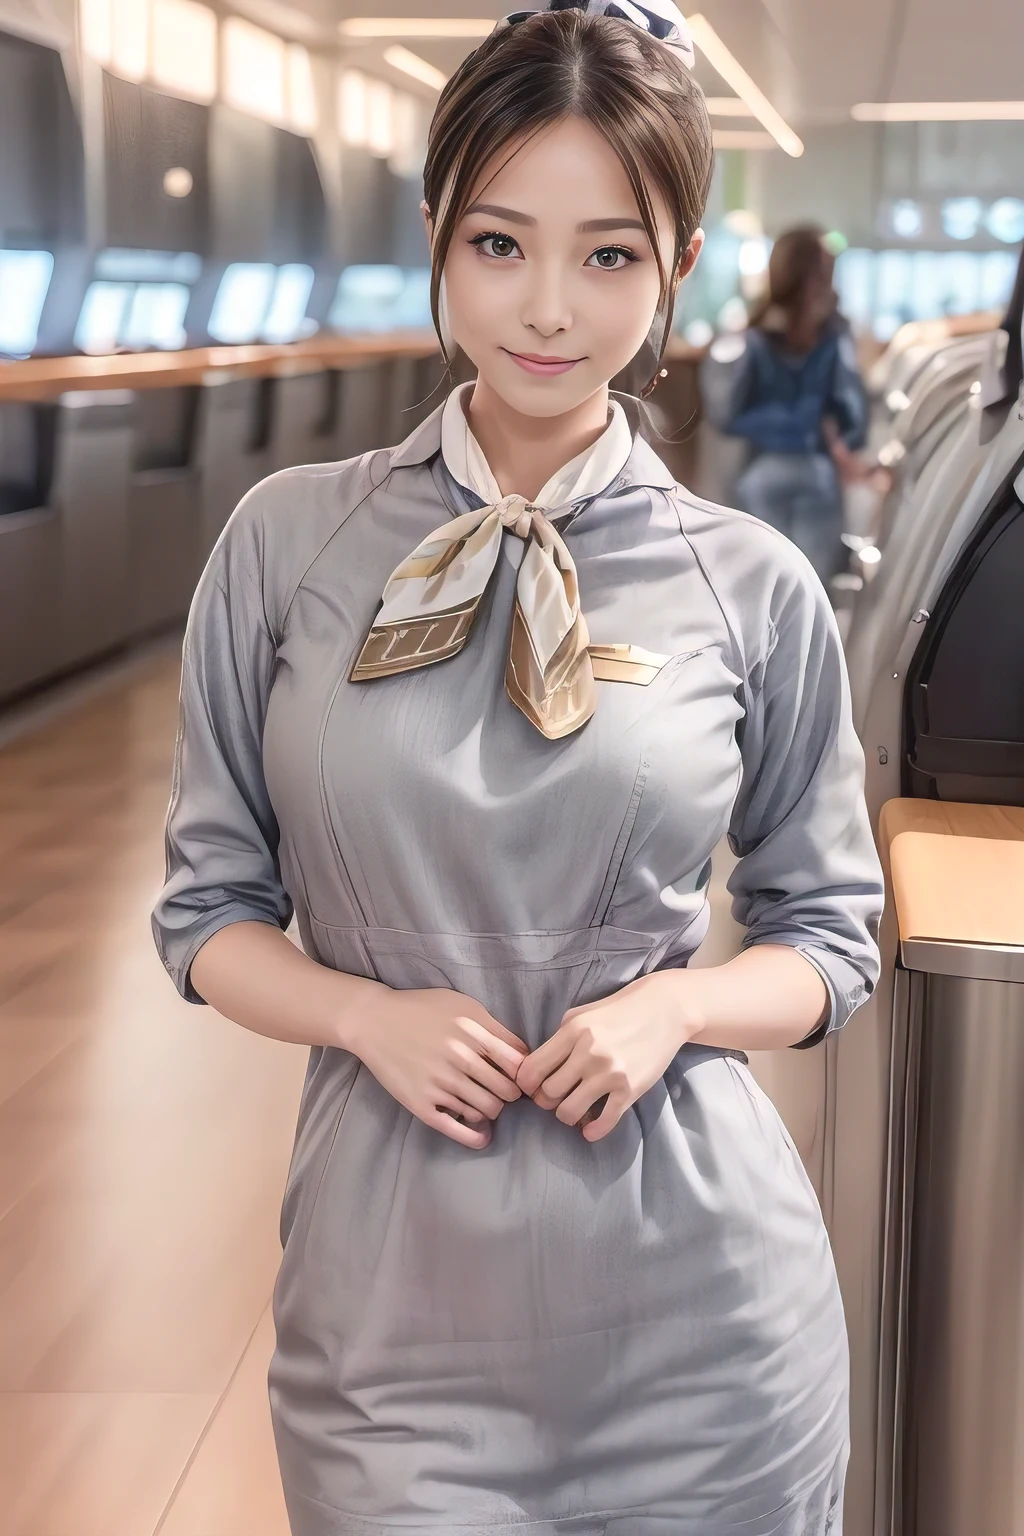 (ผลงานชิ้นเอก:1.2、คุณภาพสูงสุด:1.2)、32K HDR、ความละเอียดสูง、(ตามลำพัง、ผู้หญิง 1 คน、รูปร่างเพรียวบาง)、（สไตล์สมจริงด้วยเครื่องแบบของสายการบิน Starlux Airlines）、 (ในห้องรับรองในสนามบิน, แสงระดับมืออาชีพ)、（ชุดเครื่องแบบสีเงินของสายการบิน Starlux Airlines:1.4）、（ชุดเครื่องแบบสีเงินของสายการบิน Starlux Airlines with short sleeves）、（ผ้าพันคอที่หน้าอก）、หน้าอกใหญ่、（อัพผมยาว、อัพตอนเย็น）、ผมสีน้ำตาลเข้ม、ยิงยาว、（（มือดี：2.0））、（（สัดส่วนของร่างกายที่กลมกลืนกัน：1.5））、（（แขนขาปกติ：2.0））、（（นิ้วปกติ：2.0））、（（ดวงตาที่ละเอียดอ่อน：2.0））、（（ตาปกติ：2.0））)、ท่ายืนที่สวยงาม